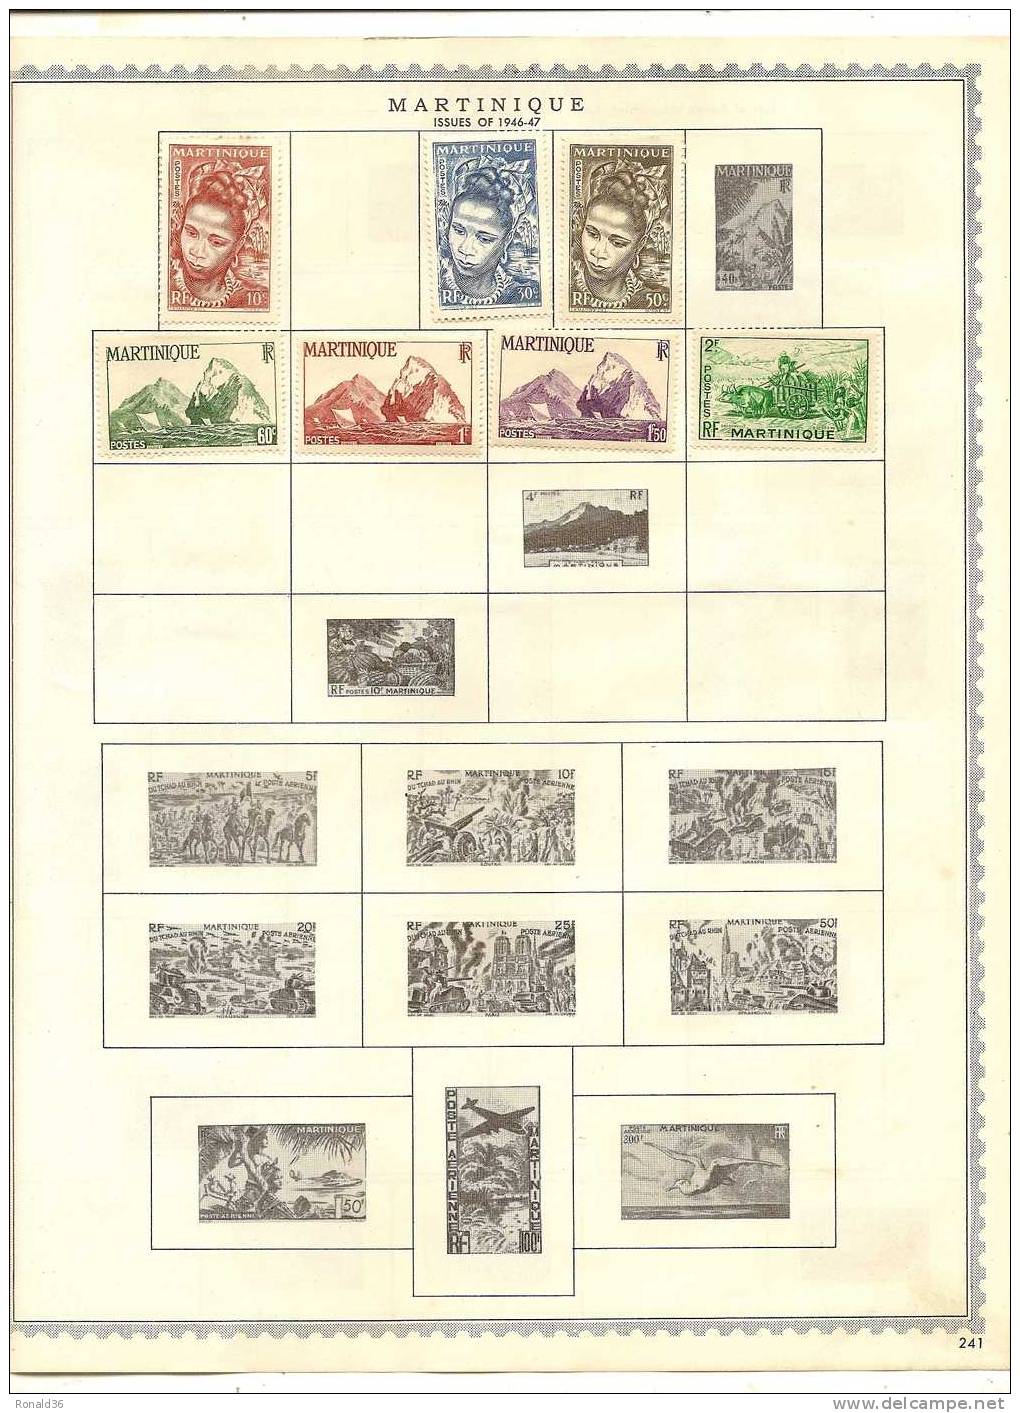 lot de timbre poste , aérienne , cachet ( neuf et oblitéré )  Afrique  ILE MADAGASCAR  MARTINIQUE MAURITANIE  TOGO